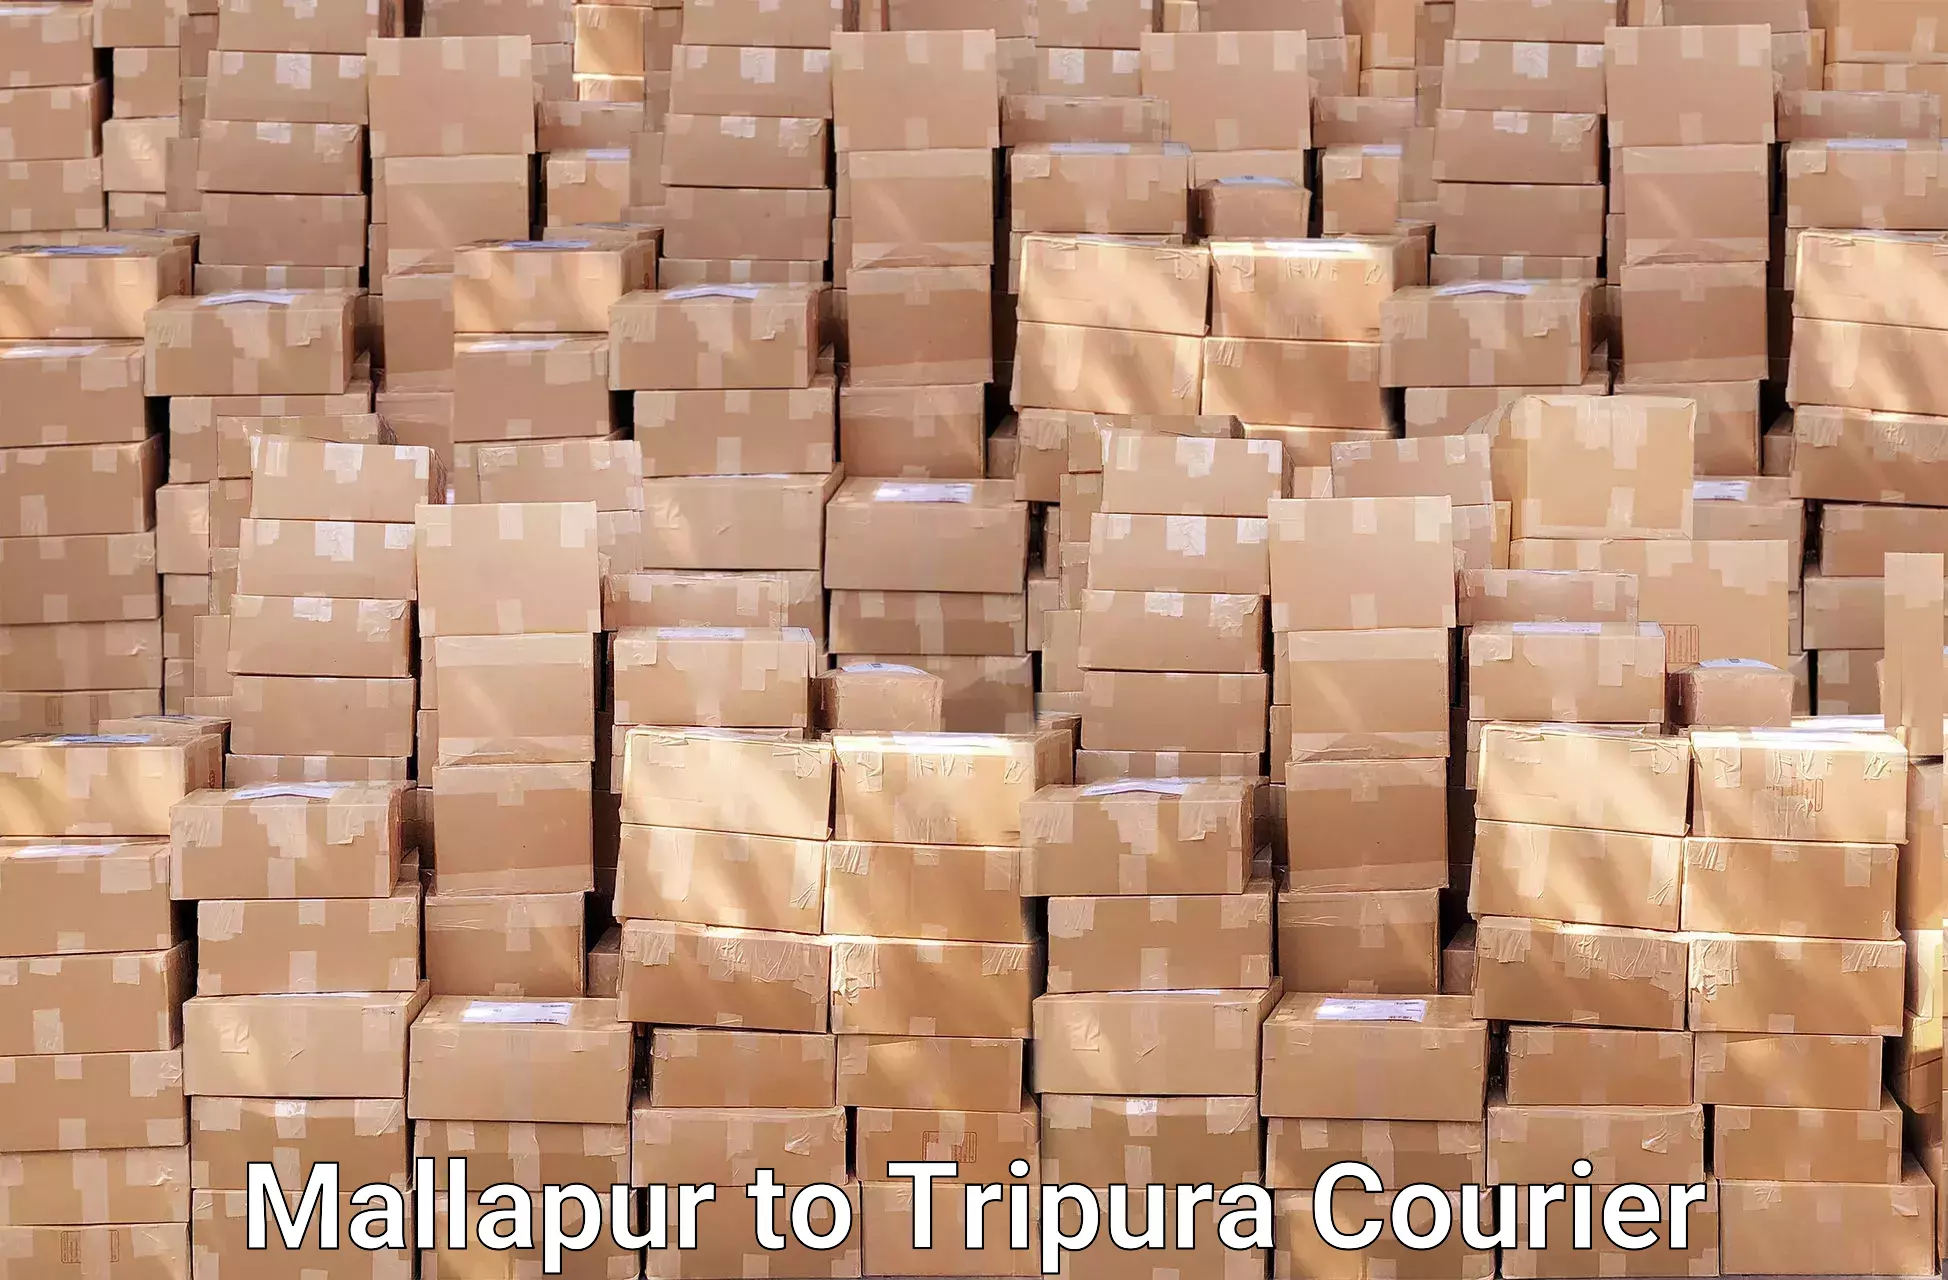 Expert goods movers Mallapur to IIIT Agartala